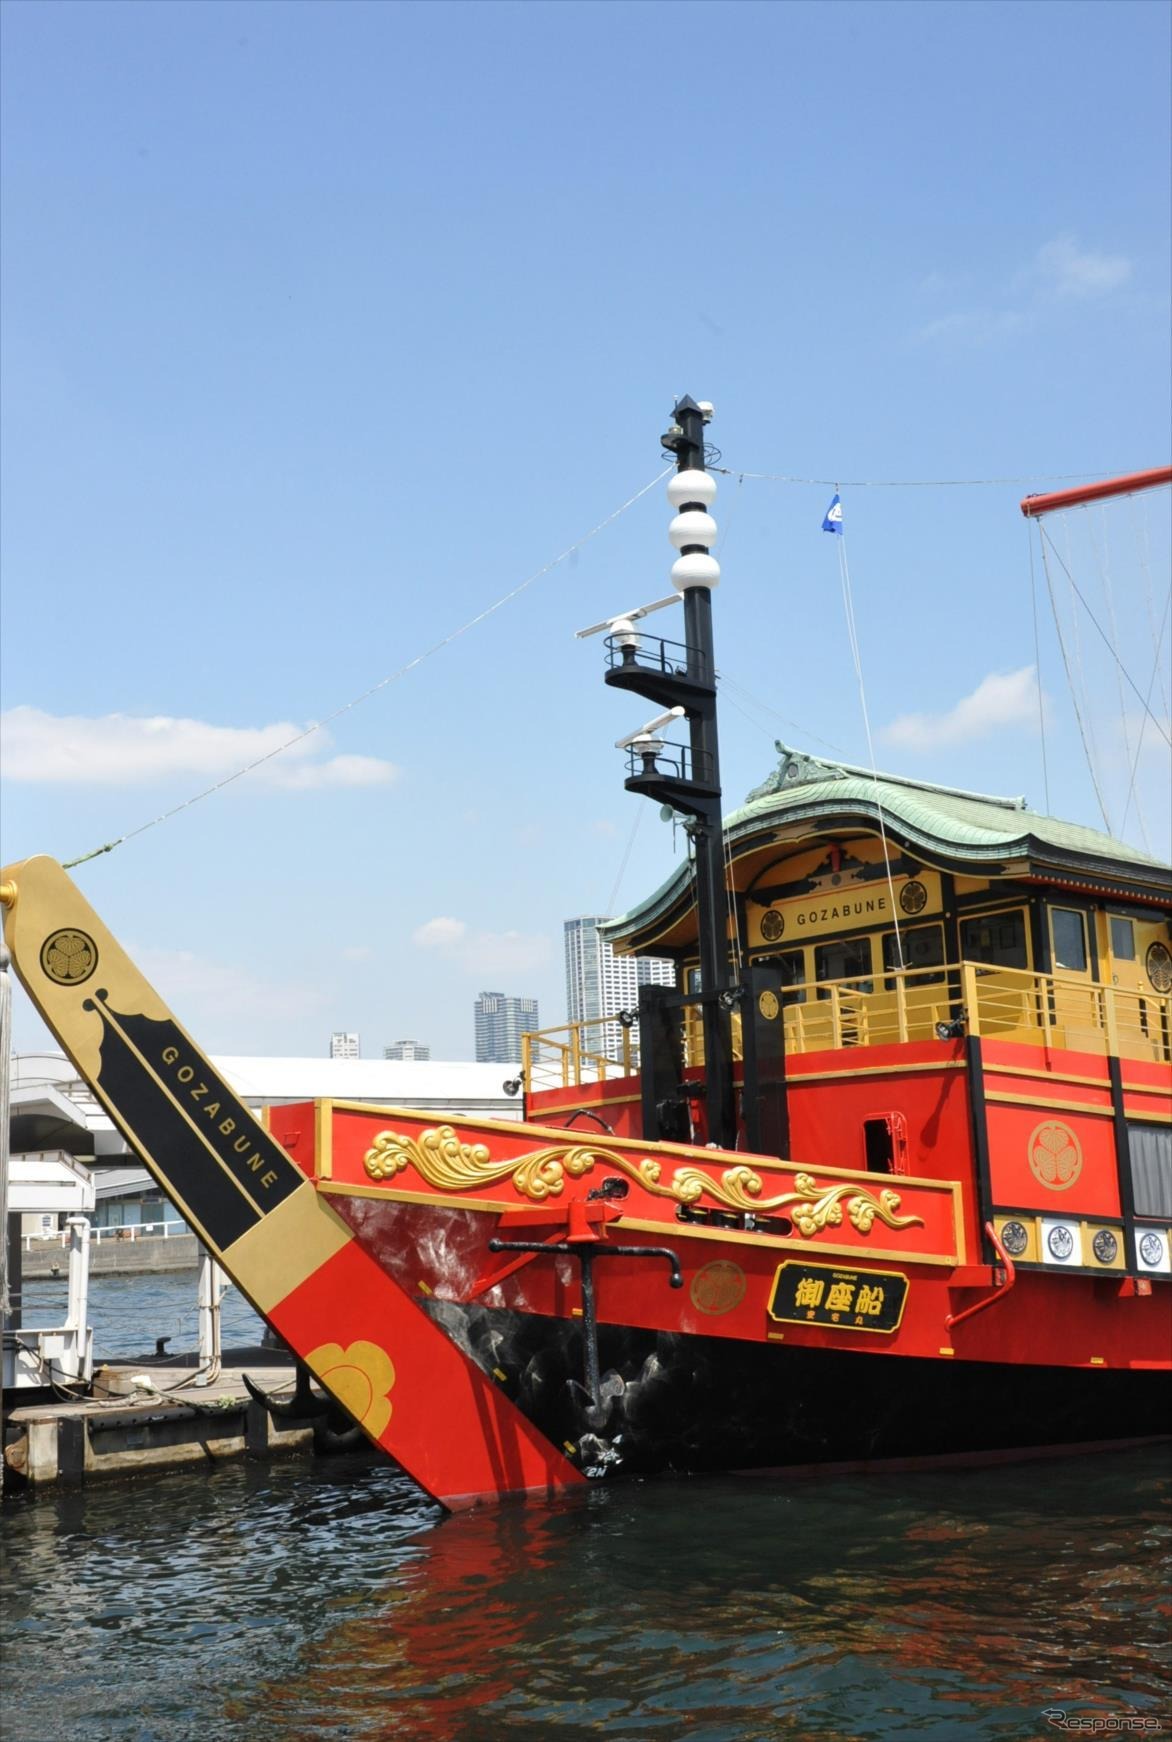 かつて江戸大名の乗った豪華船である御座船を模した「安宅丸」で「大名庭園の遺産登録を働きかける」